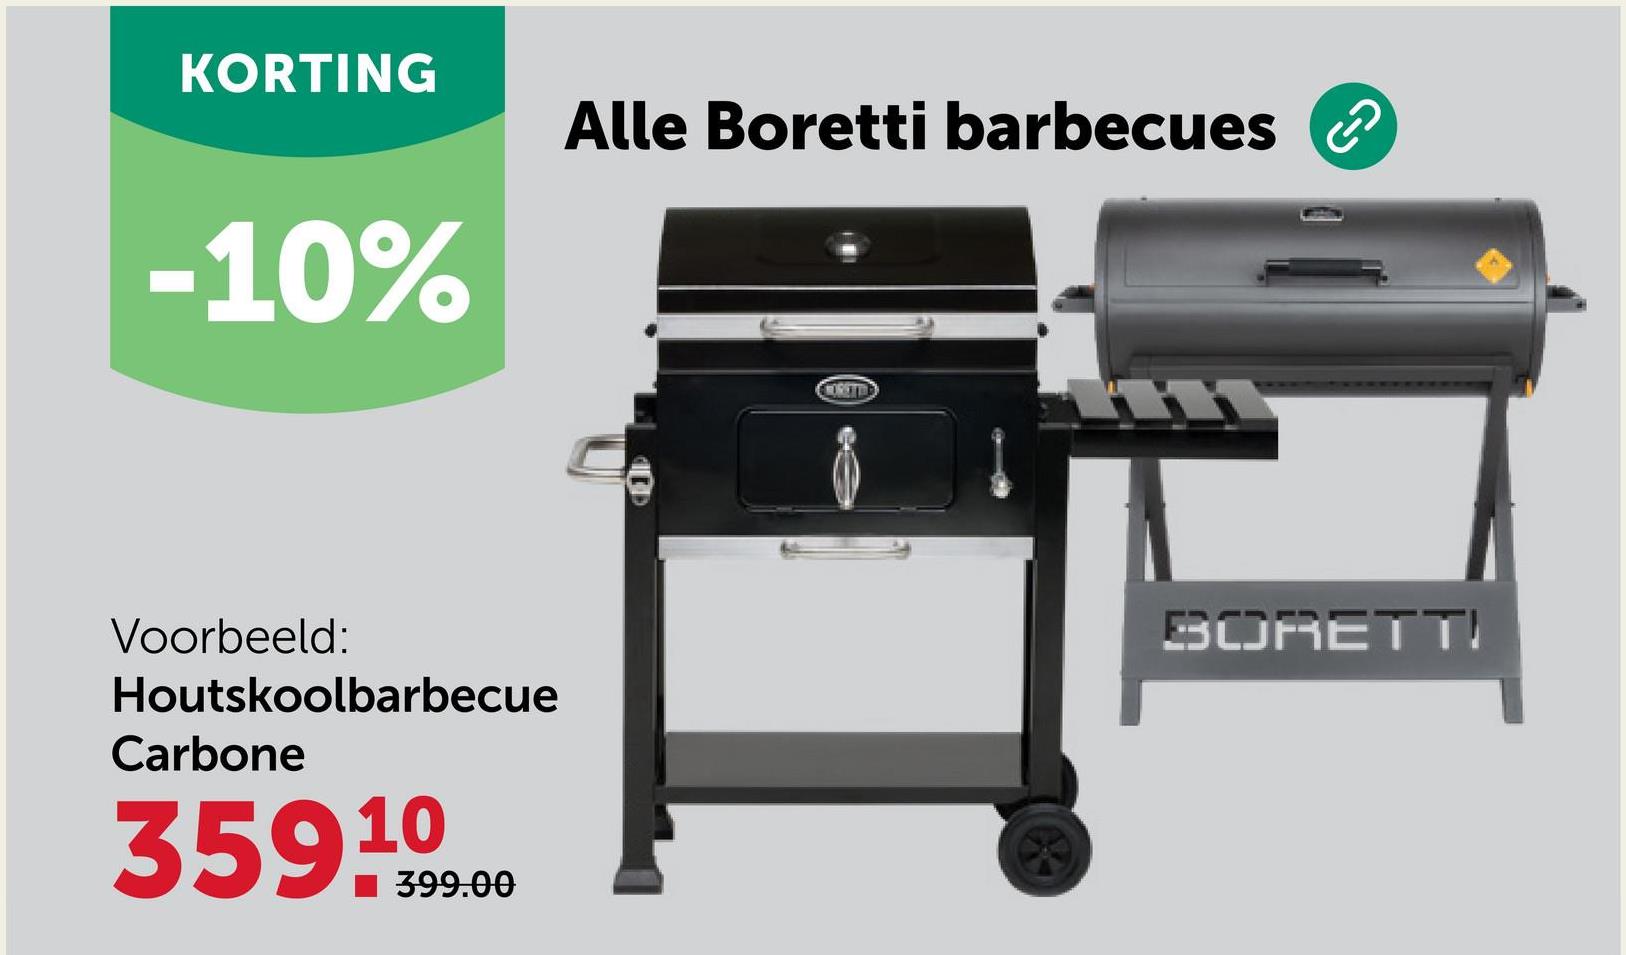 KORTING
-10%
Alle Boretti barbecues
Voorbeeld:
Houtskoolbarbecue
Carbone
35999.00
MORETTE
BORETT!